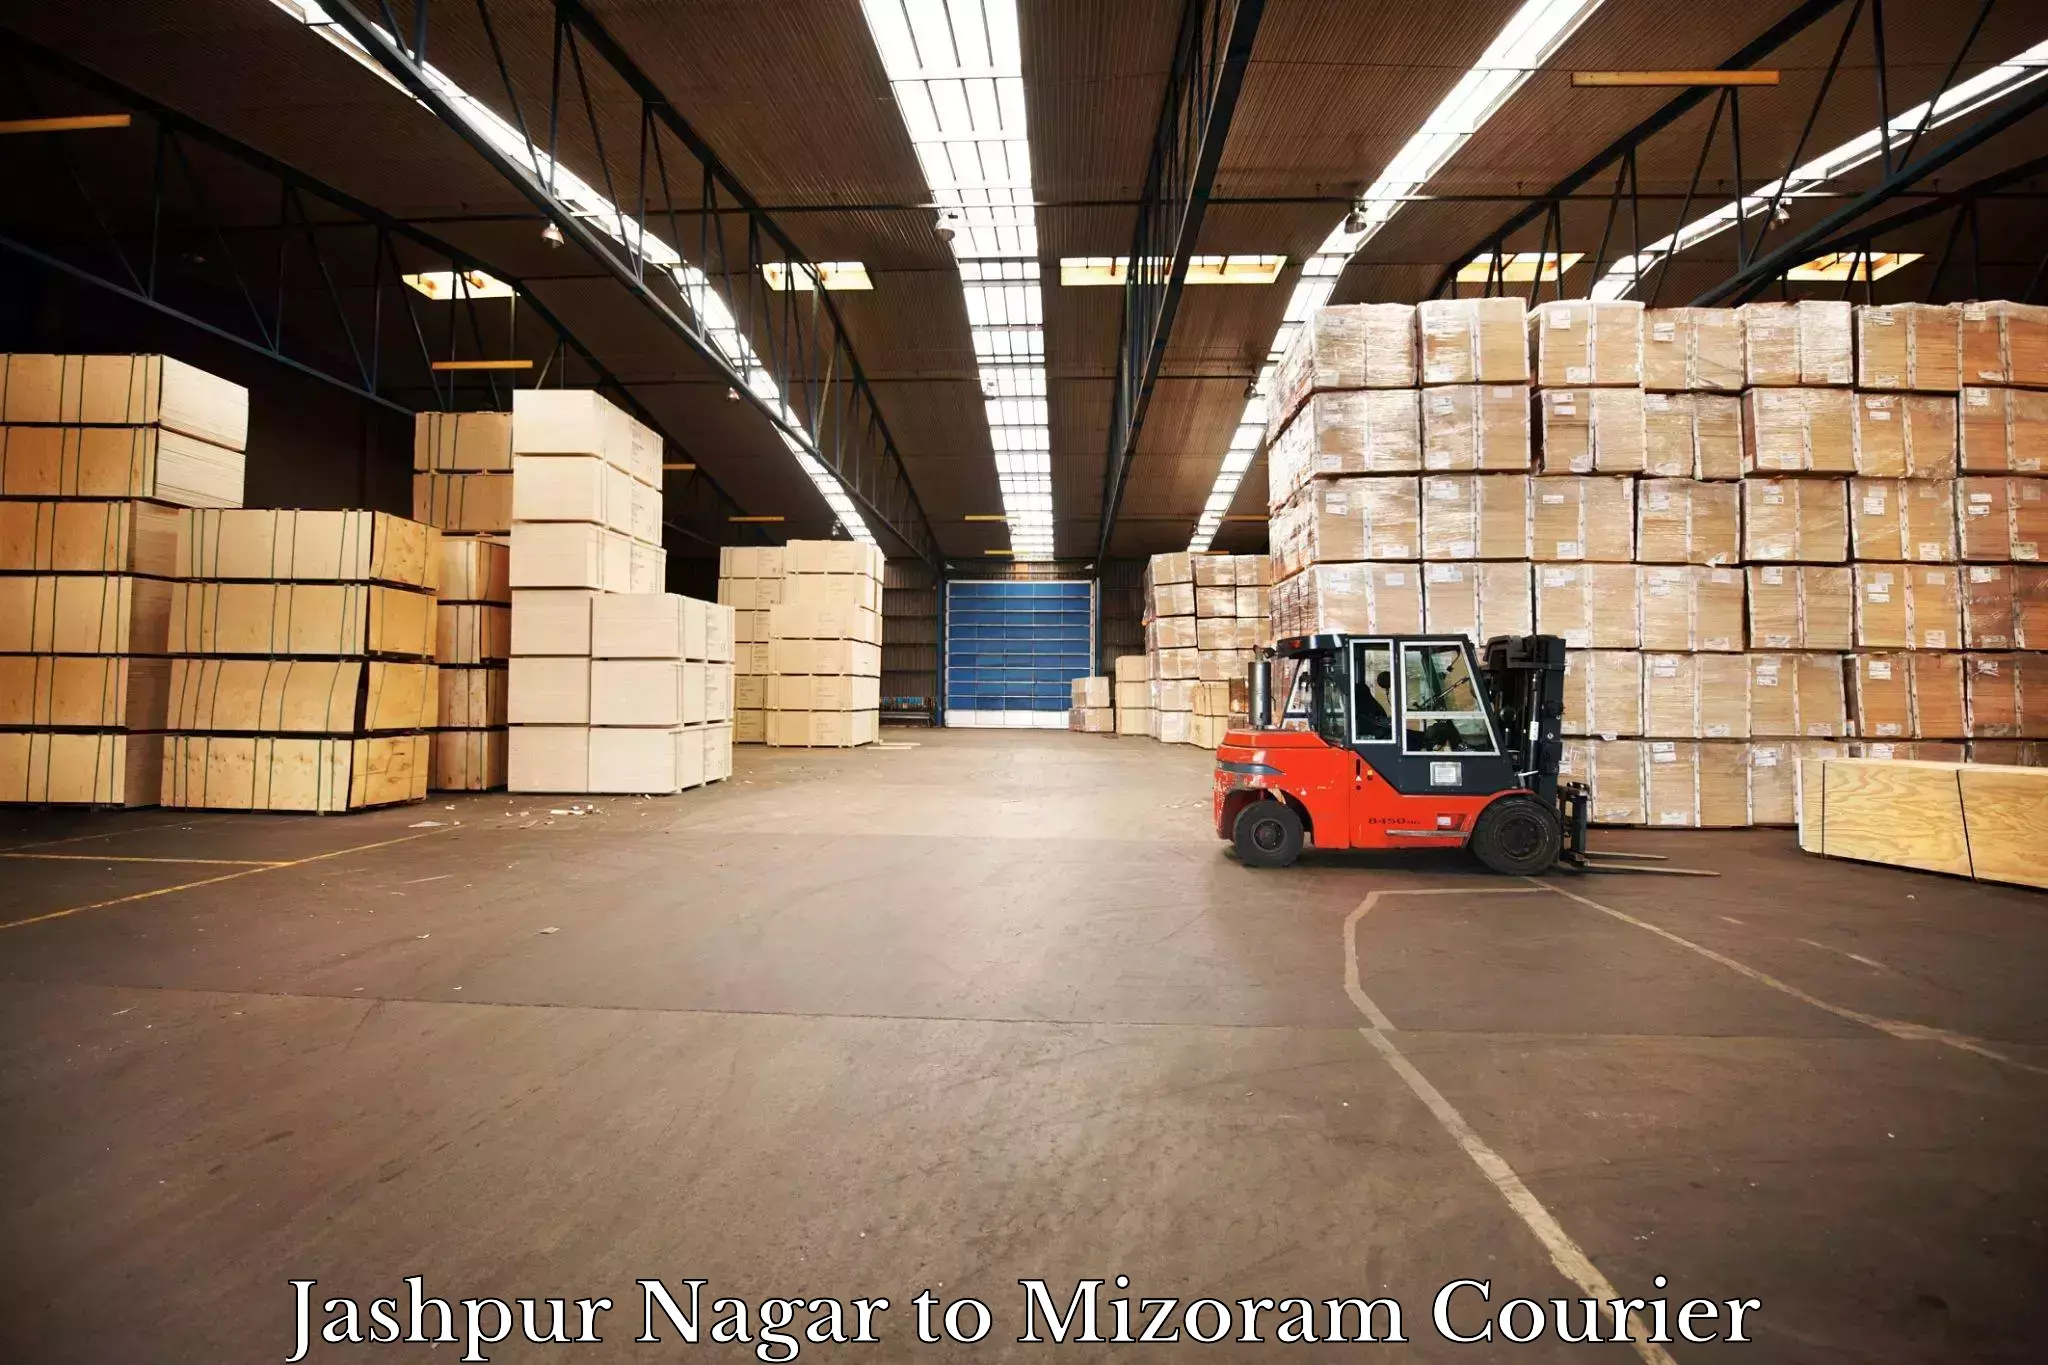 Reliable courier service Jashpur Nagar to Lawngtlai